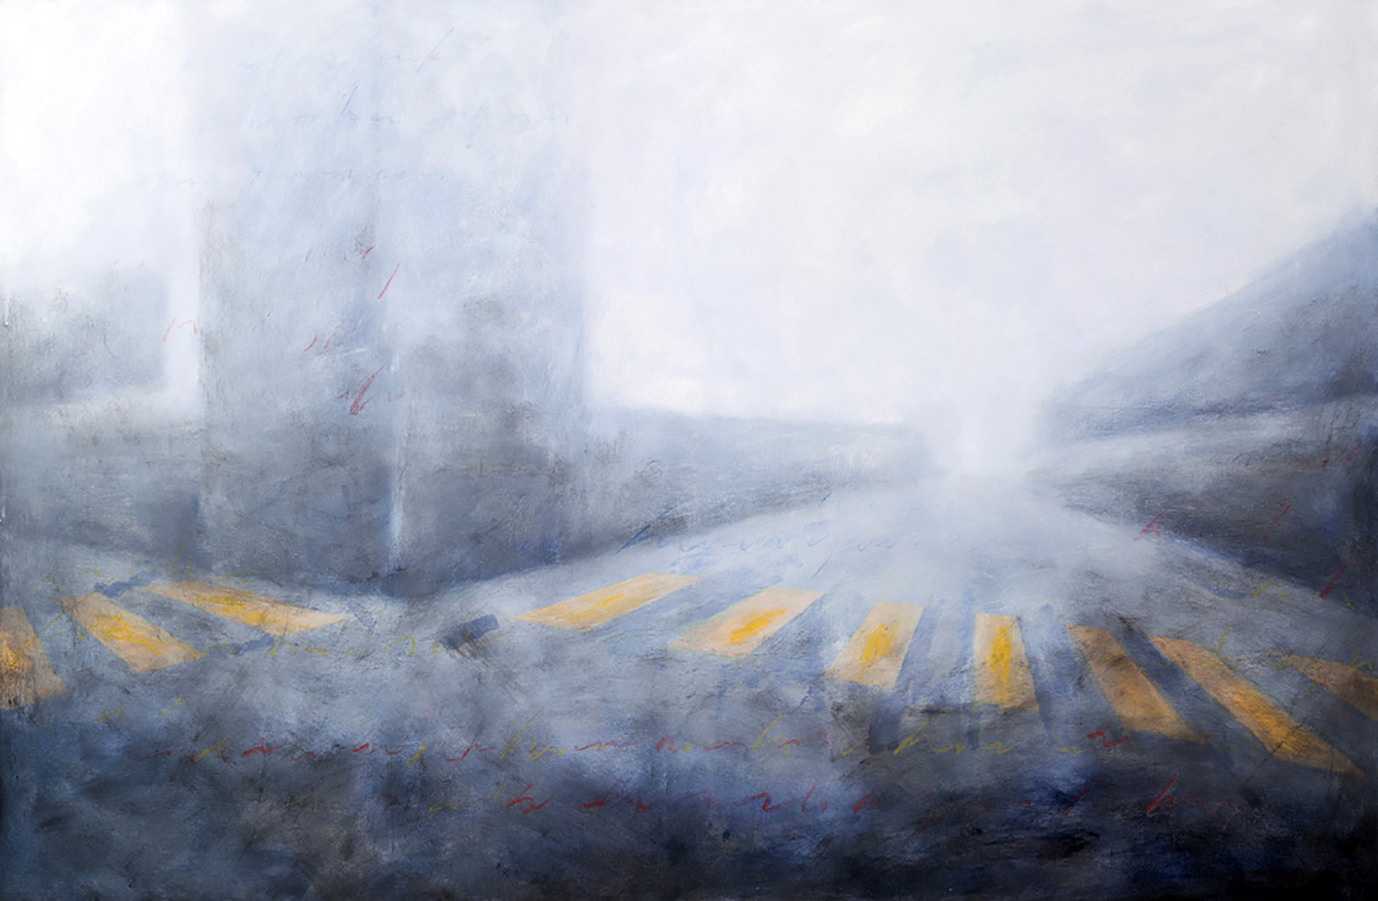 MORALES ERNESTO, Calle perdida, 2009, oil on canvas, 80x120 cm, Pubblicata catalogo Il tempo della distanza - Invisible bridges